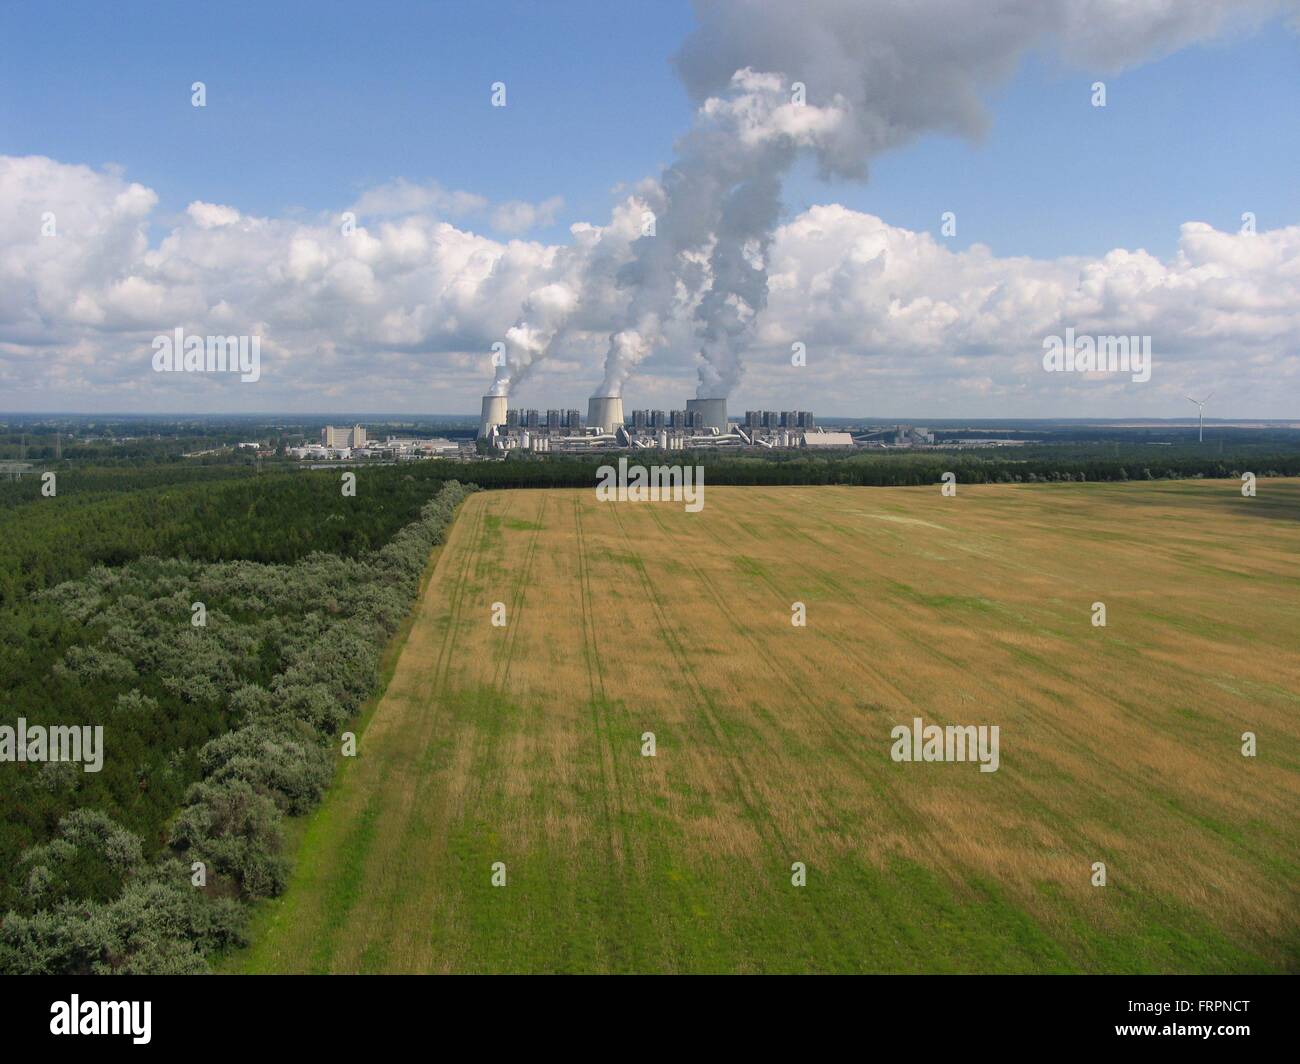 La pianta di potere Janschwalde ha una capacità installata di 3.000 megawatt. È il più grande brown centrali a carbone vegetale in Germania. Janschwalde, Peitz, Cottbus, Brandeburgo, Germania, Europa Data: 7 luglio 2012 Foto Stock